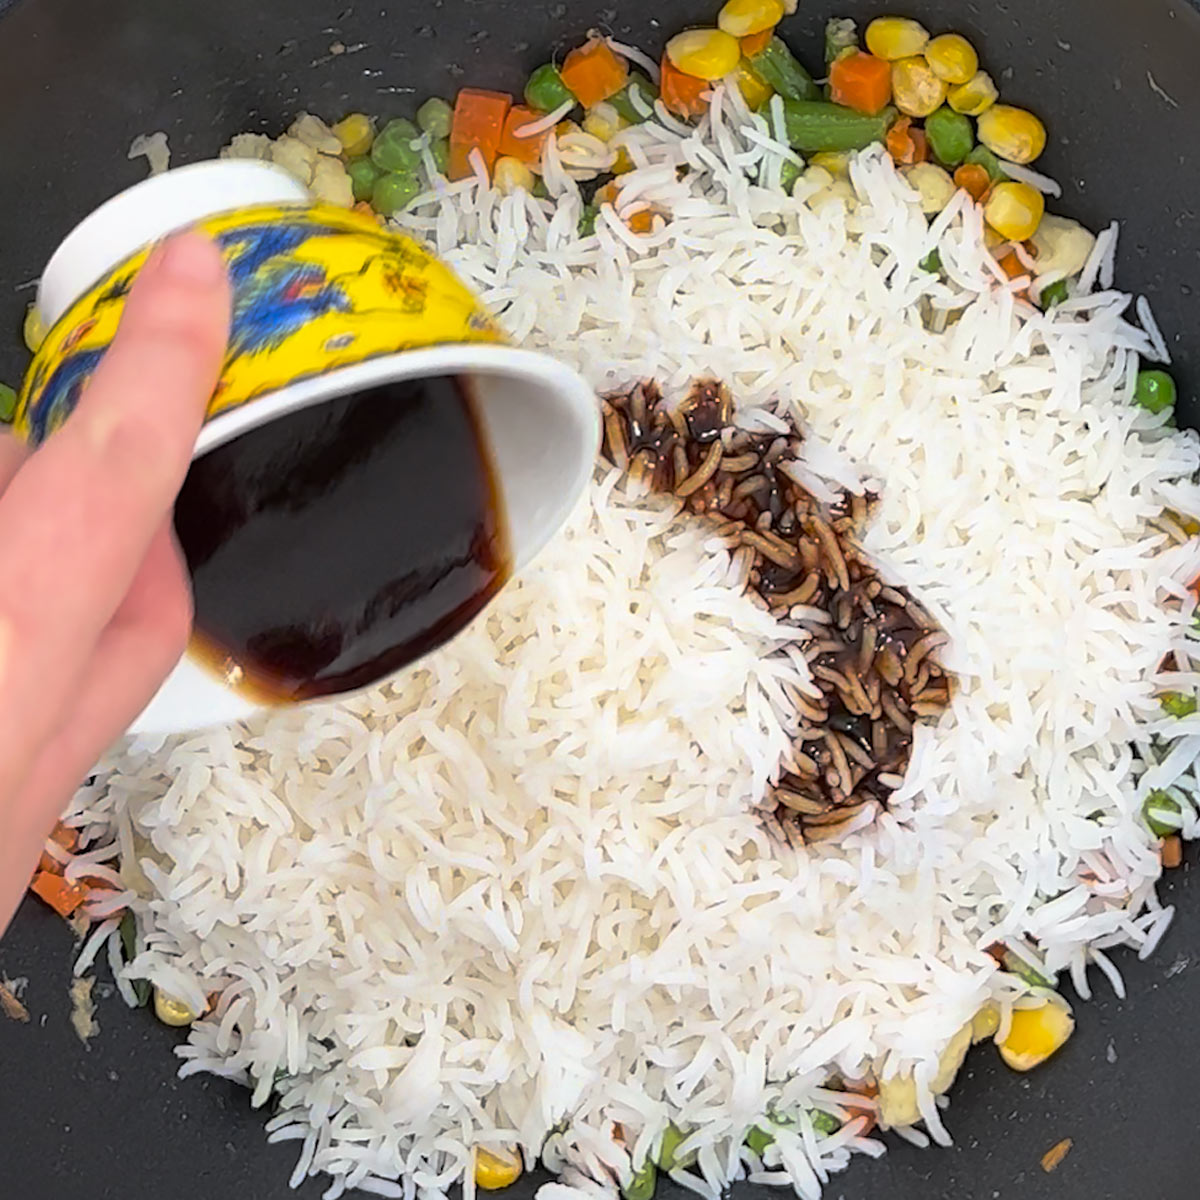 pour stir-fry sauce over rice